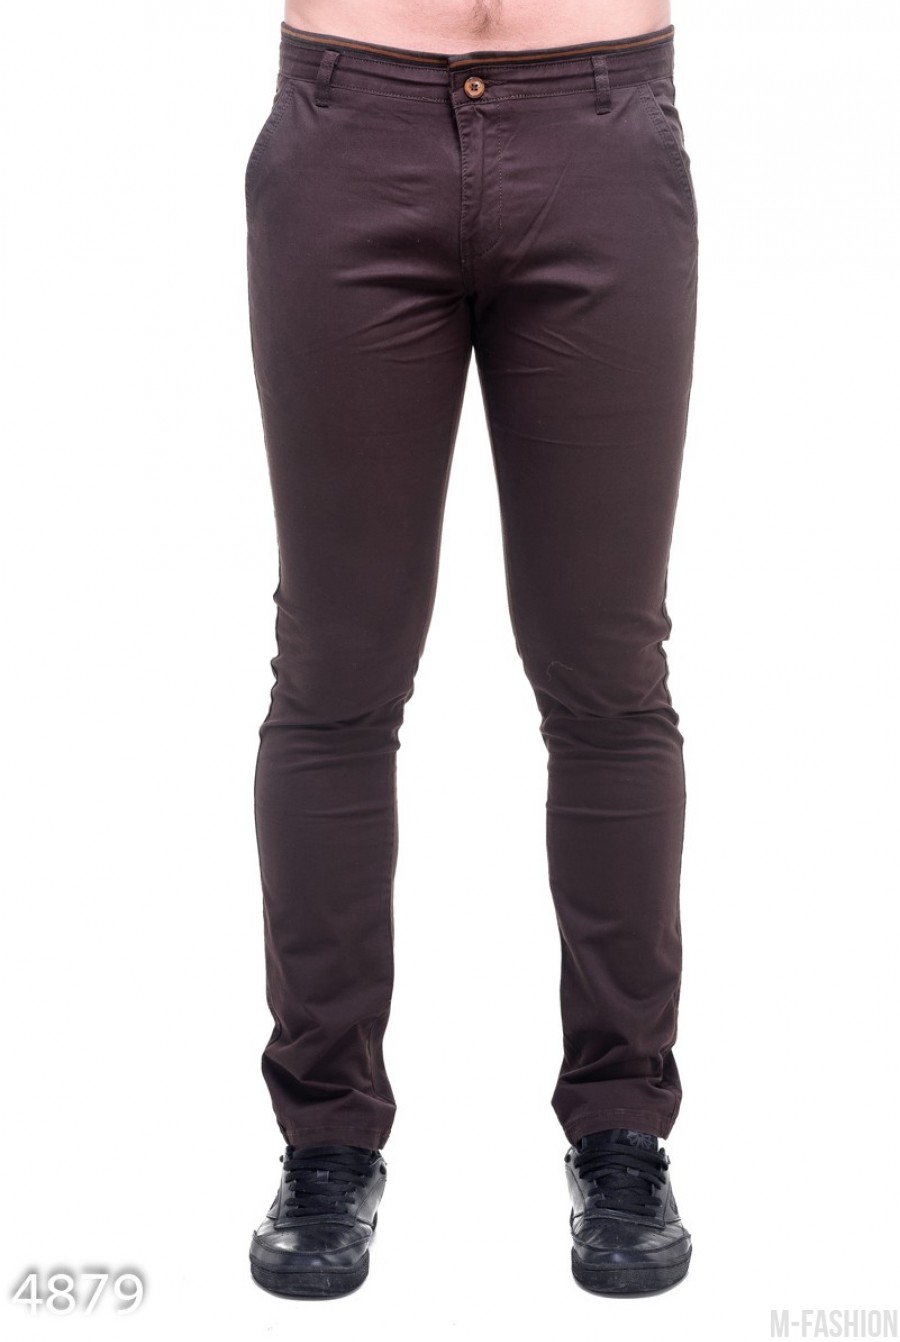 Мужские зауженные брюки цвета темного шоколада - Фото 1